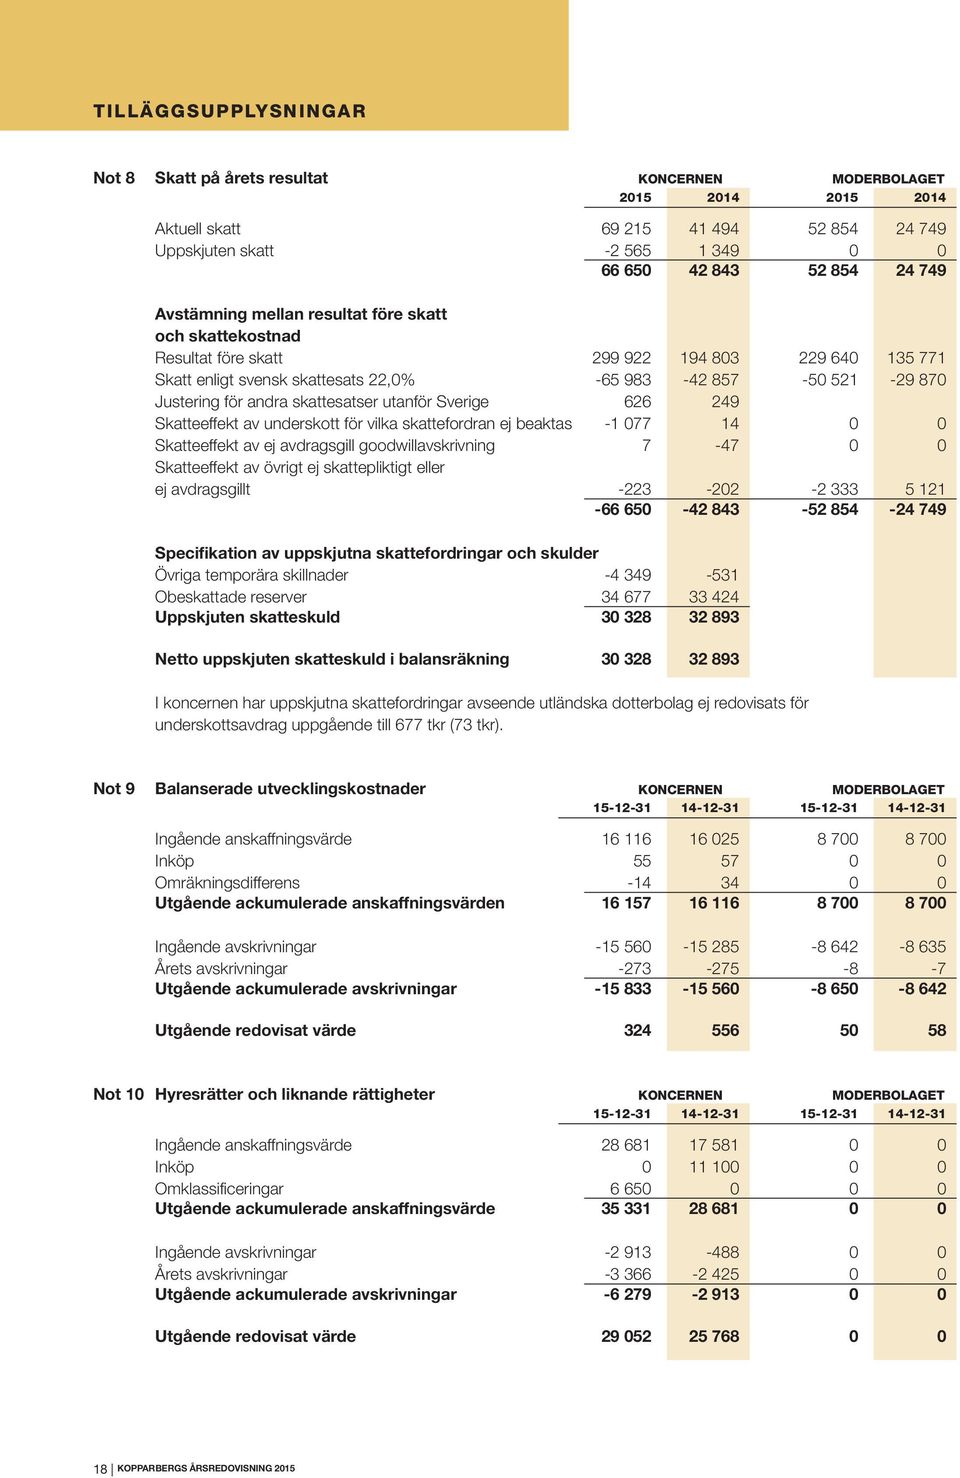 skattesatser utanför Sverige 626 249 Skatteeffekt av underskott för vilka skattefordran ej beaktas -1 077 14 0 0 Skatteeffekt av ej avdragsgill goodwillavskrivning 7-47 0 0 Skatteeffekt av övrigt ej